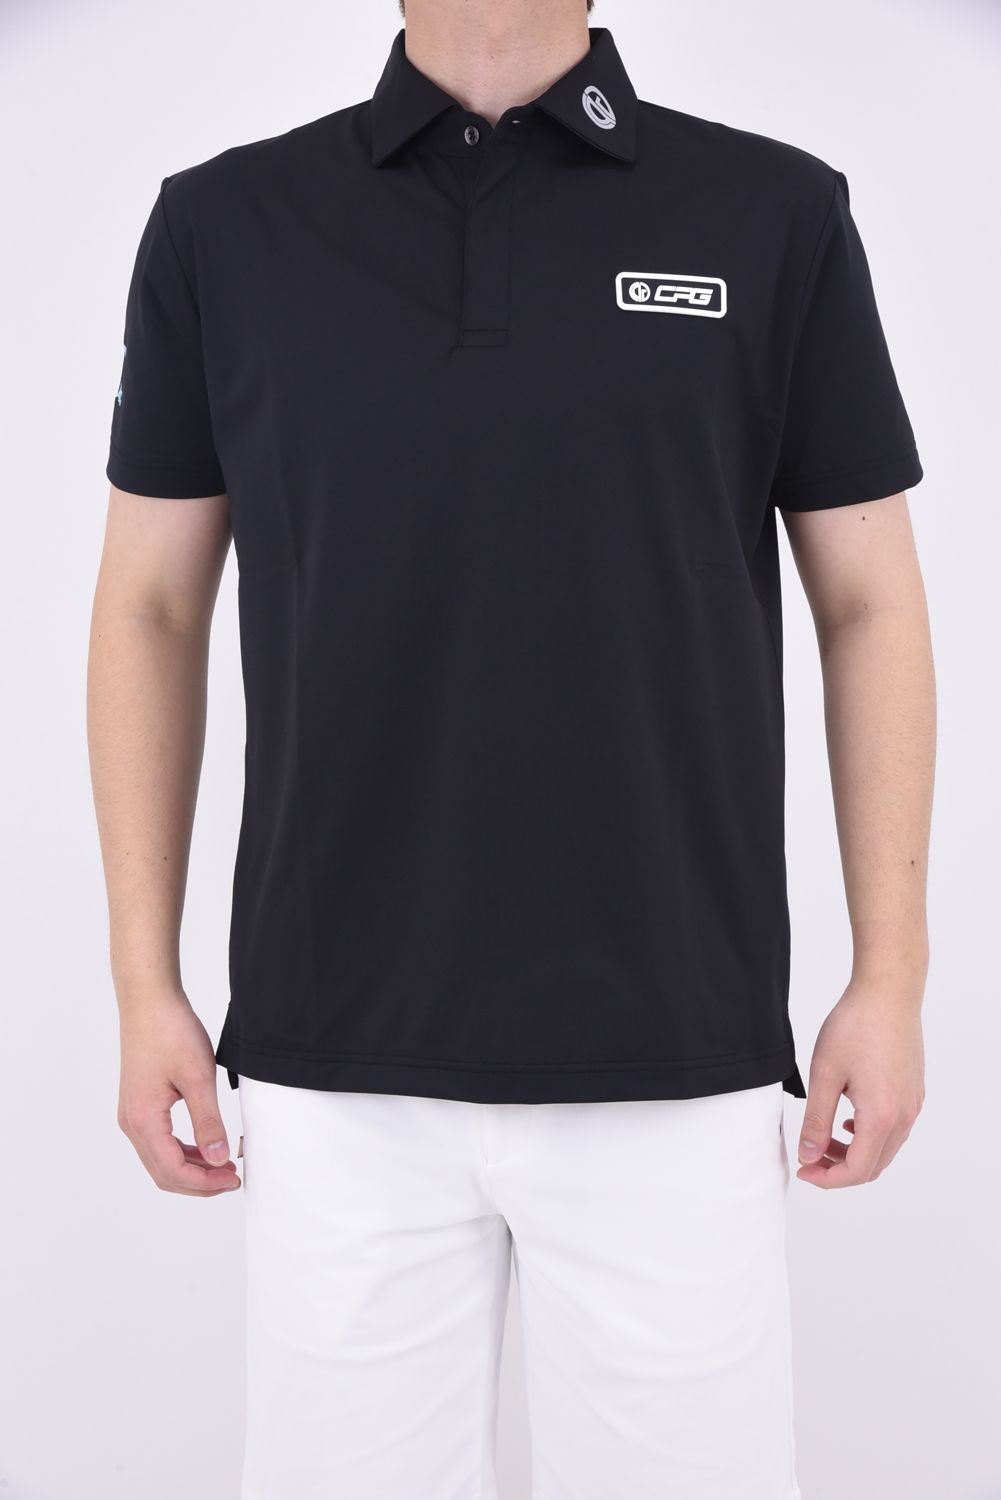 CPG GOLF - BIG LOGO POLO / ビッグロゴ ポロシャツ (ブラック 